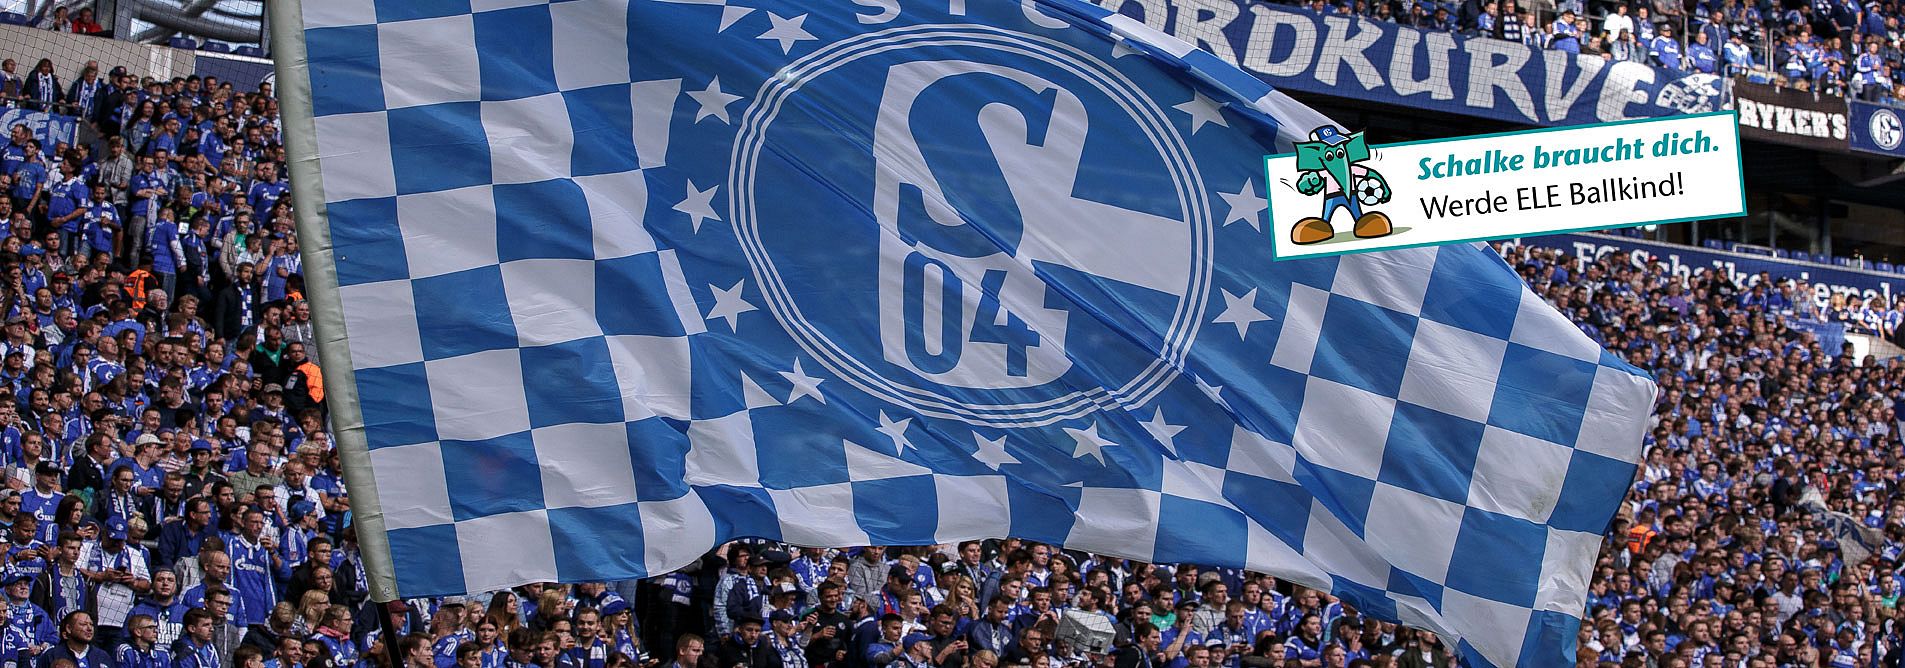 Ballkind Schalke